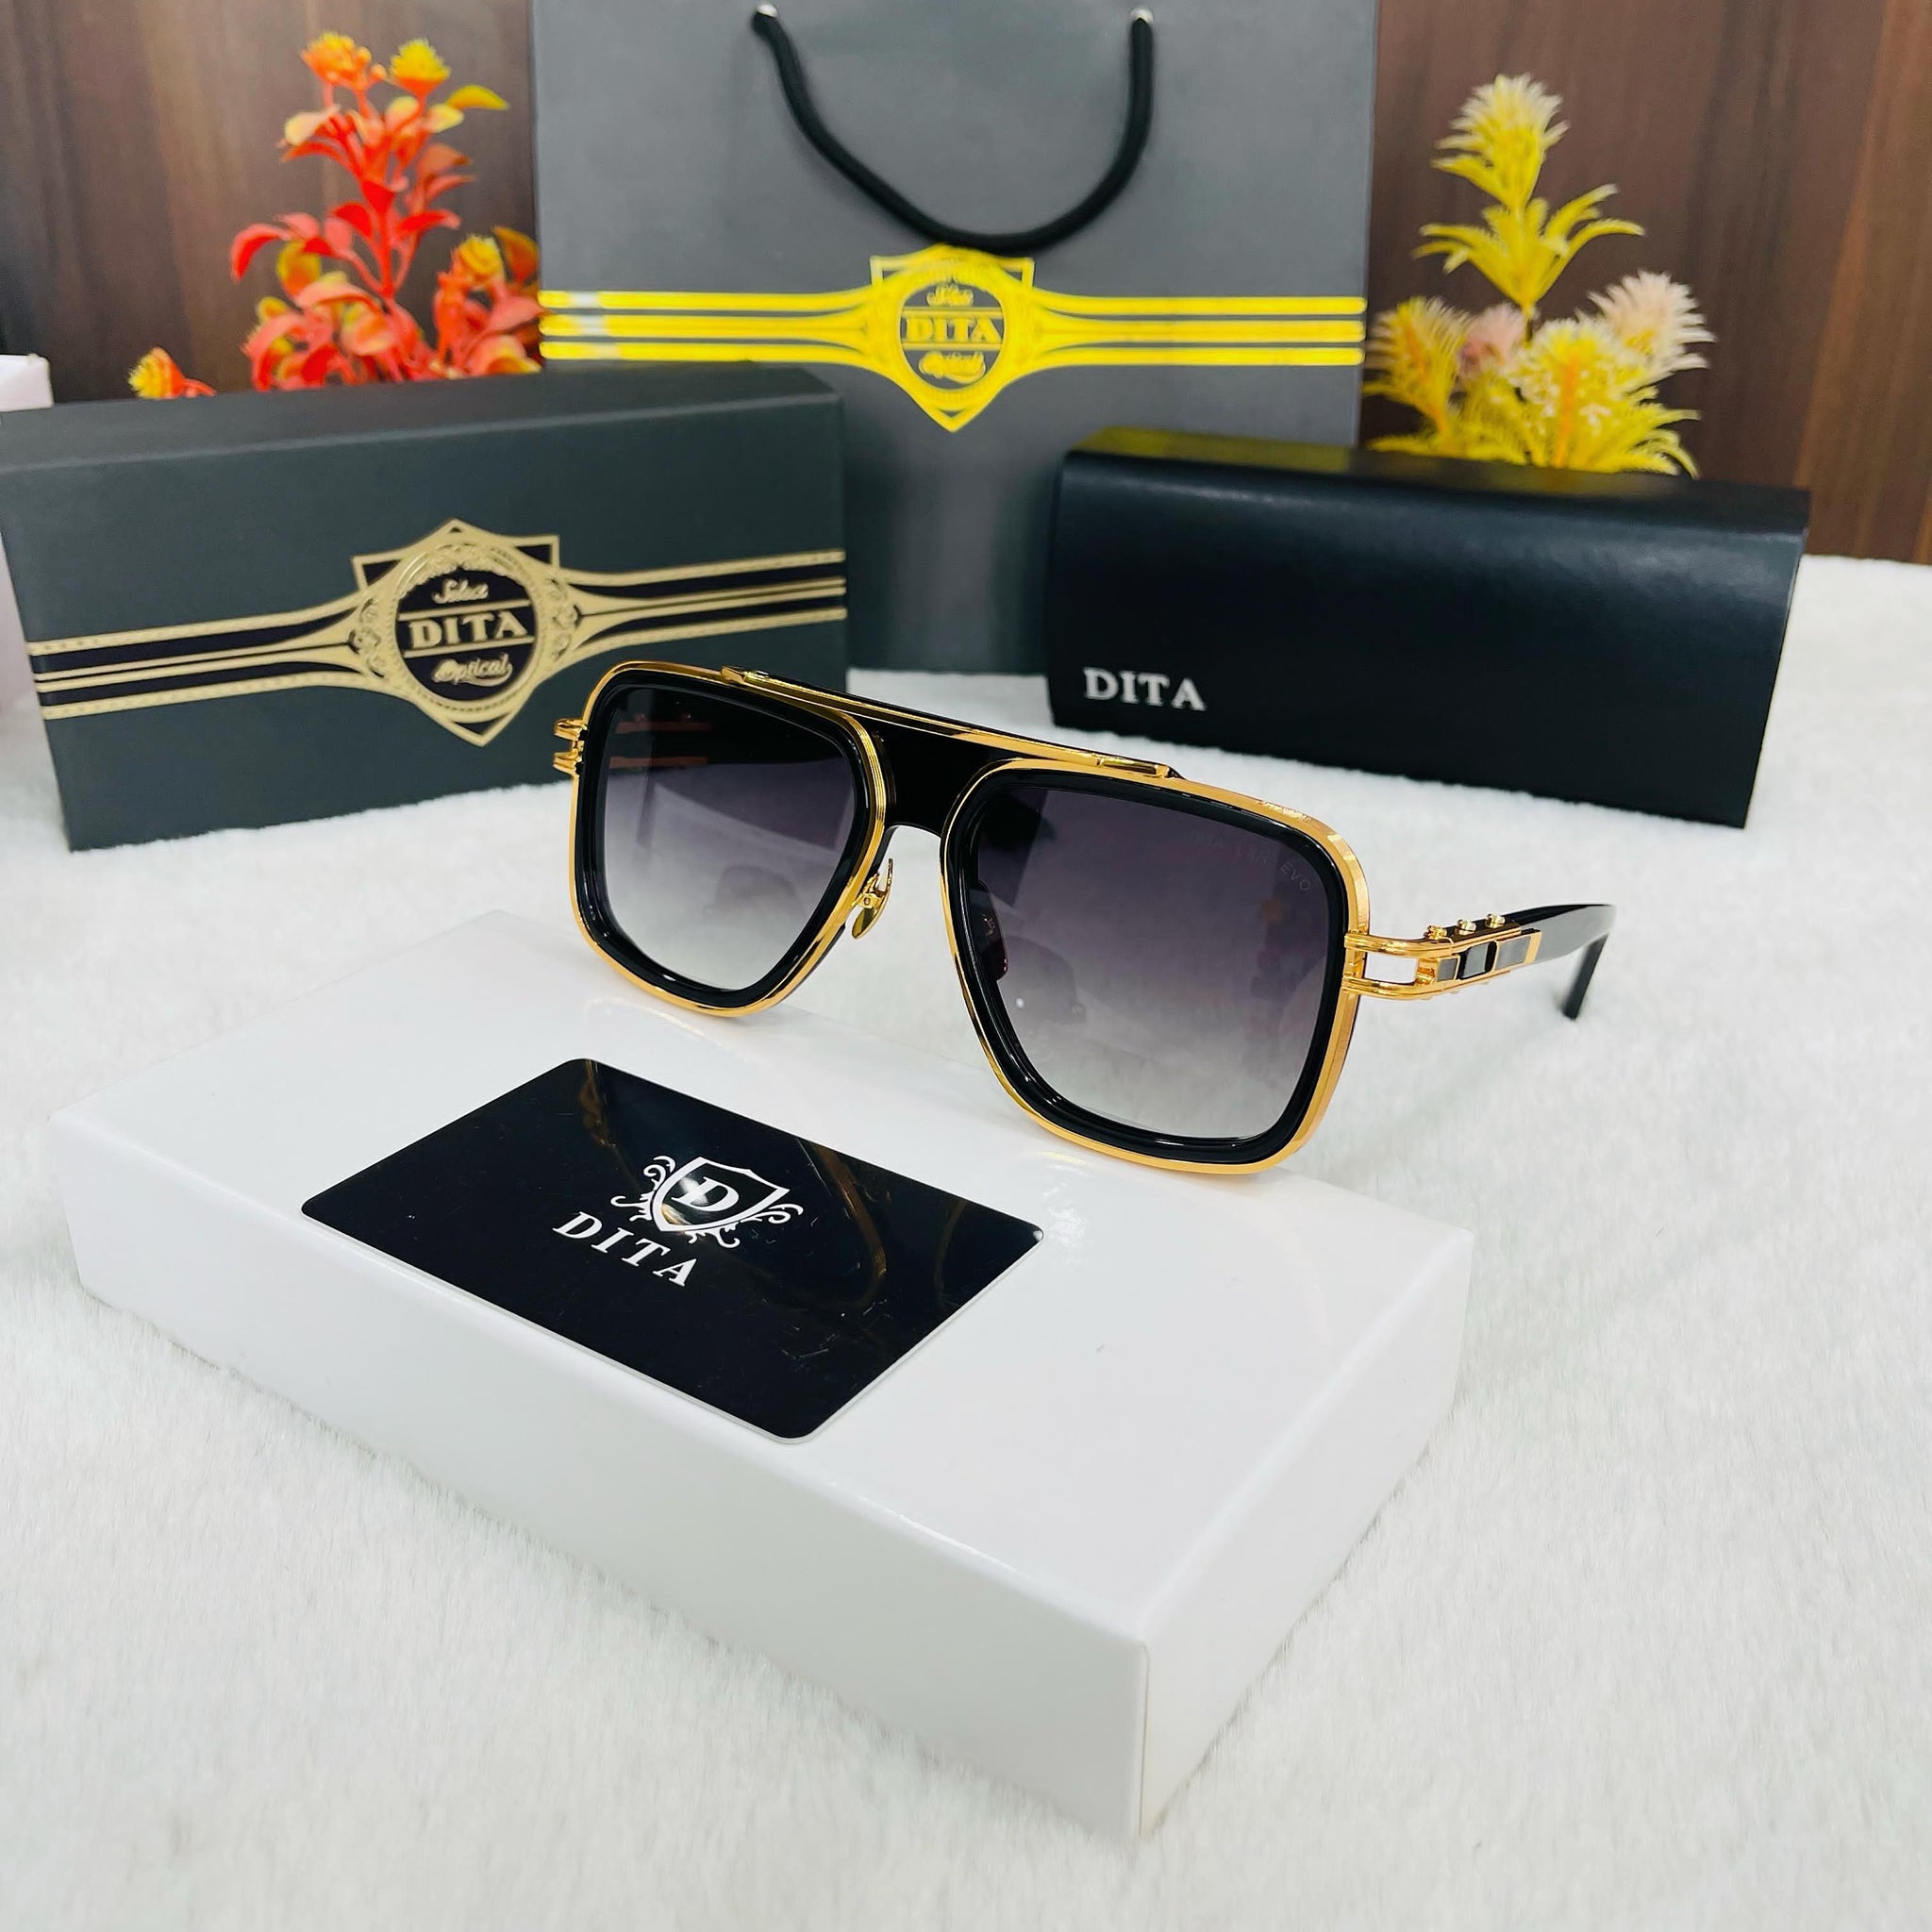 LXN-Evo sunglasses